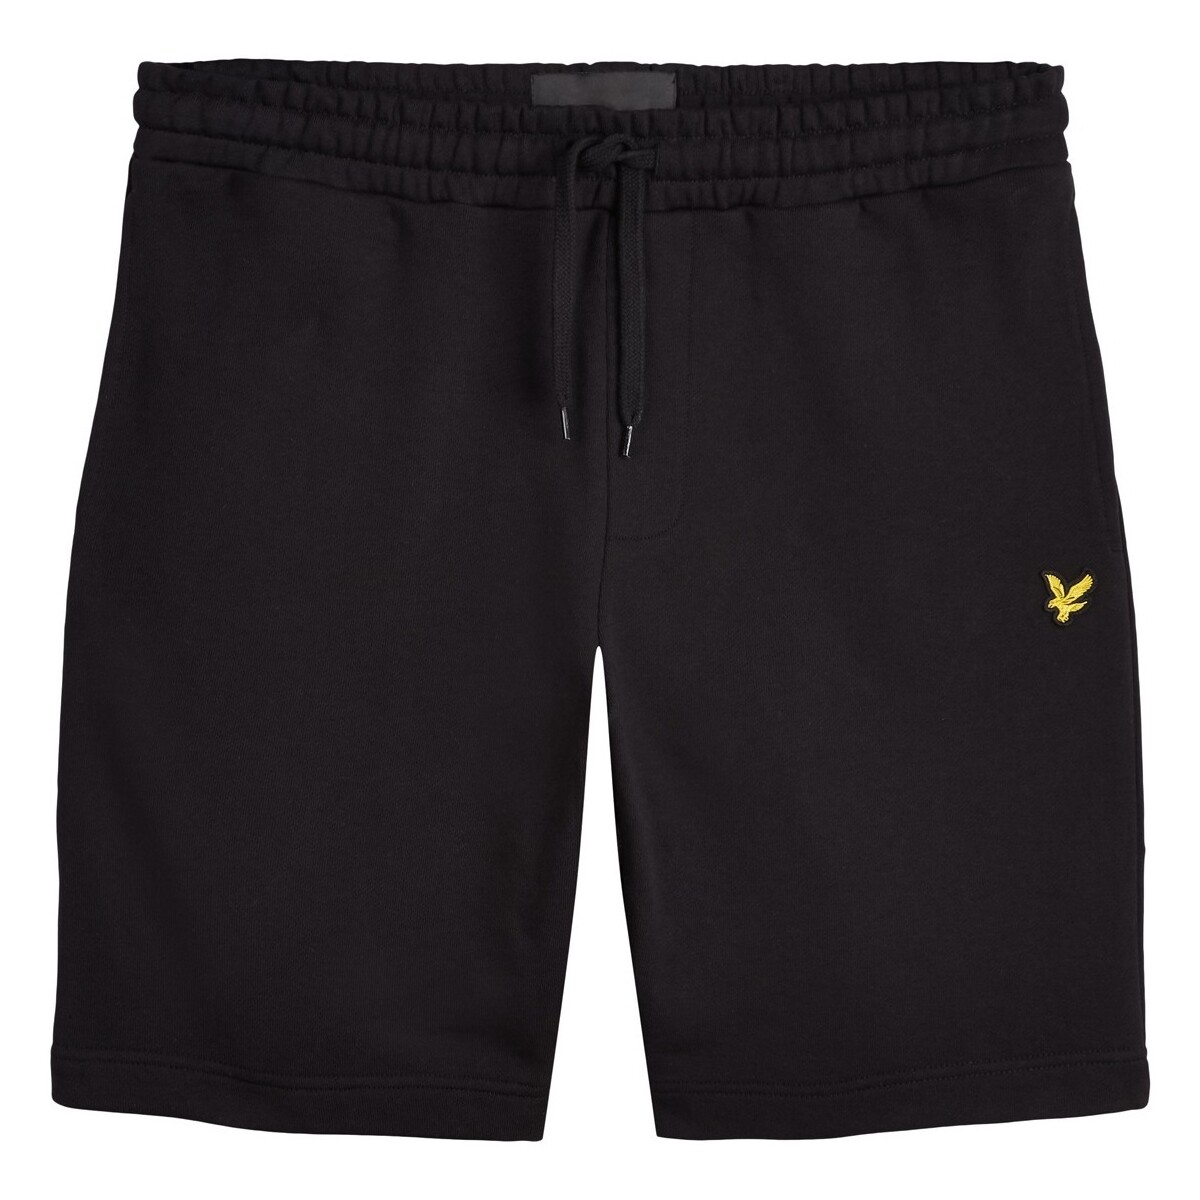 Kleidung Herren Shorts / Bermudas Lyle & Scott Sweat Short Schwarz